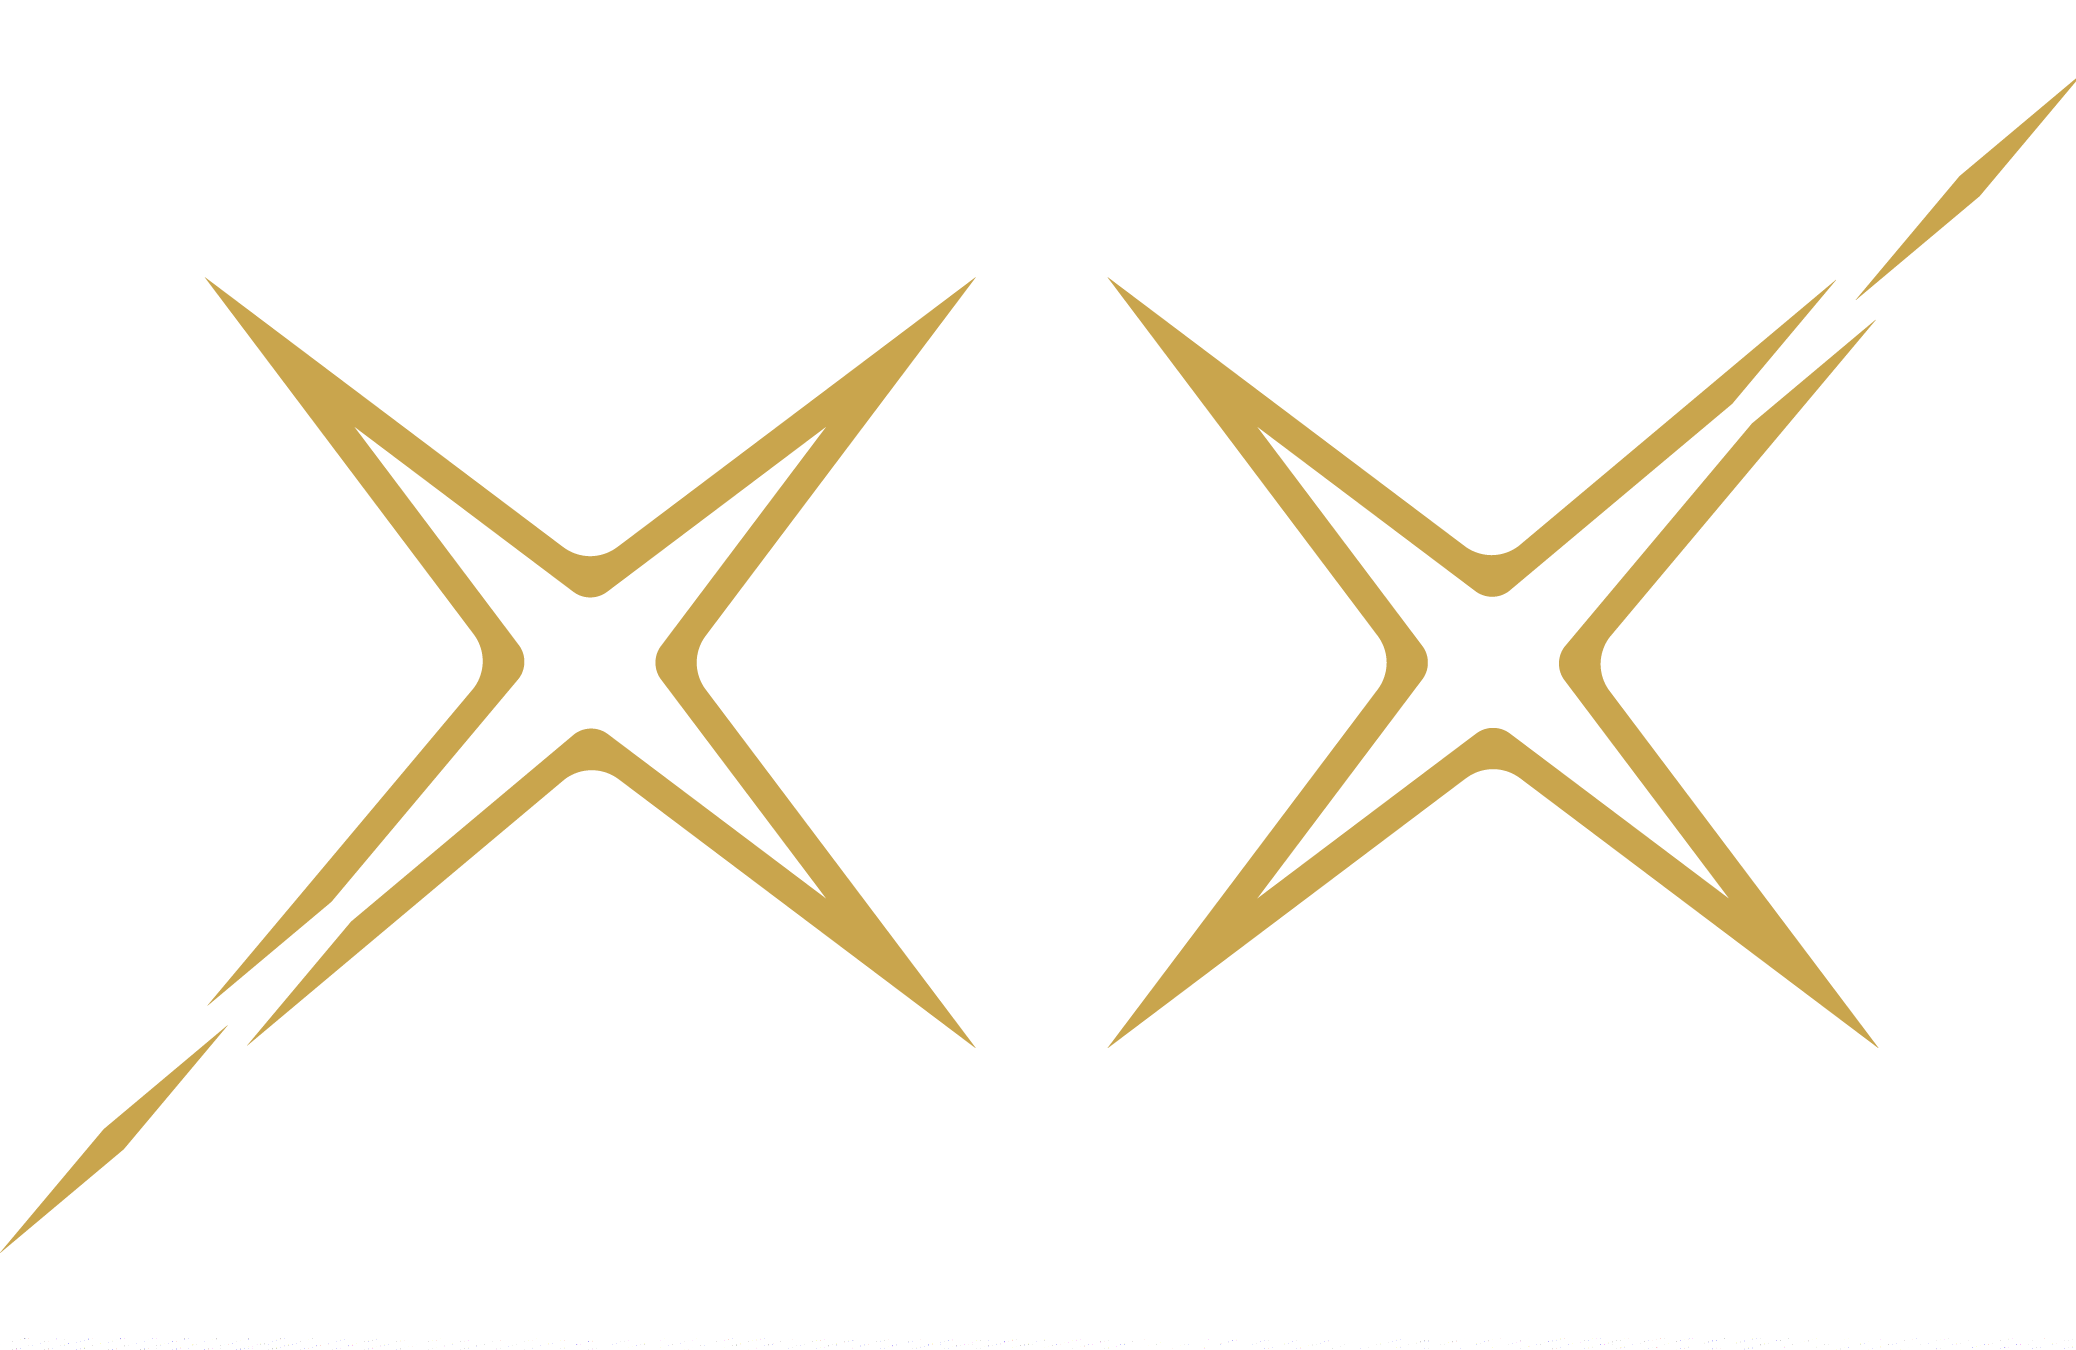 Colin Erickson "XX" Logo